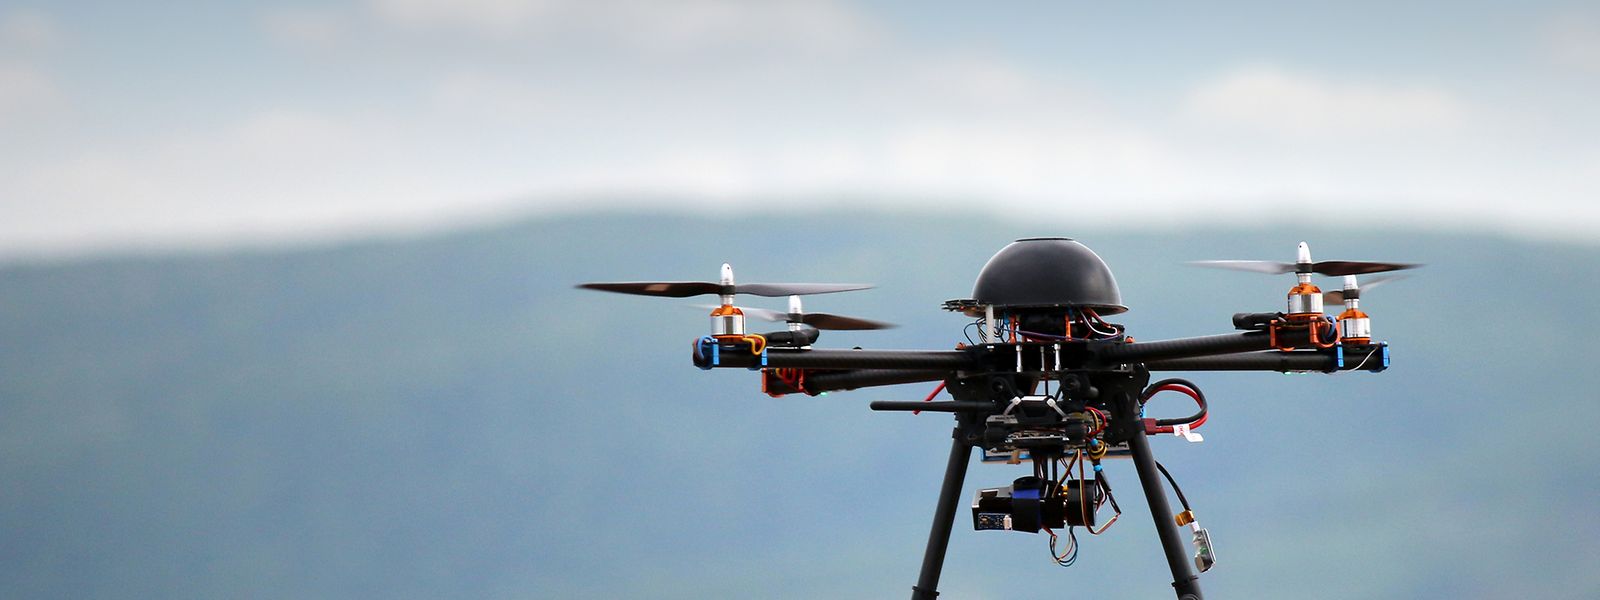 Der Einsatz von Drohnen soll bald in der gesamten EU einheitlich geregelt werden.